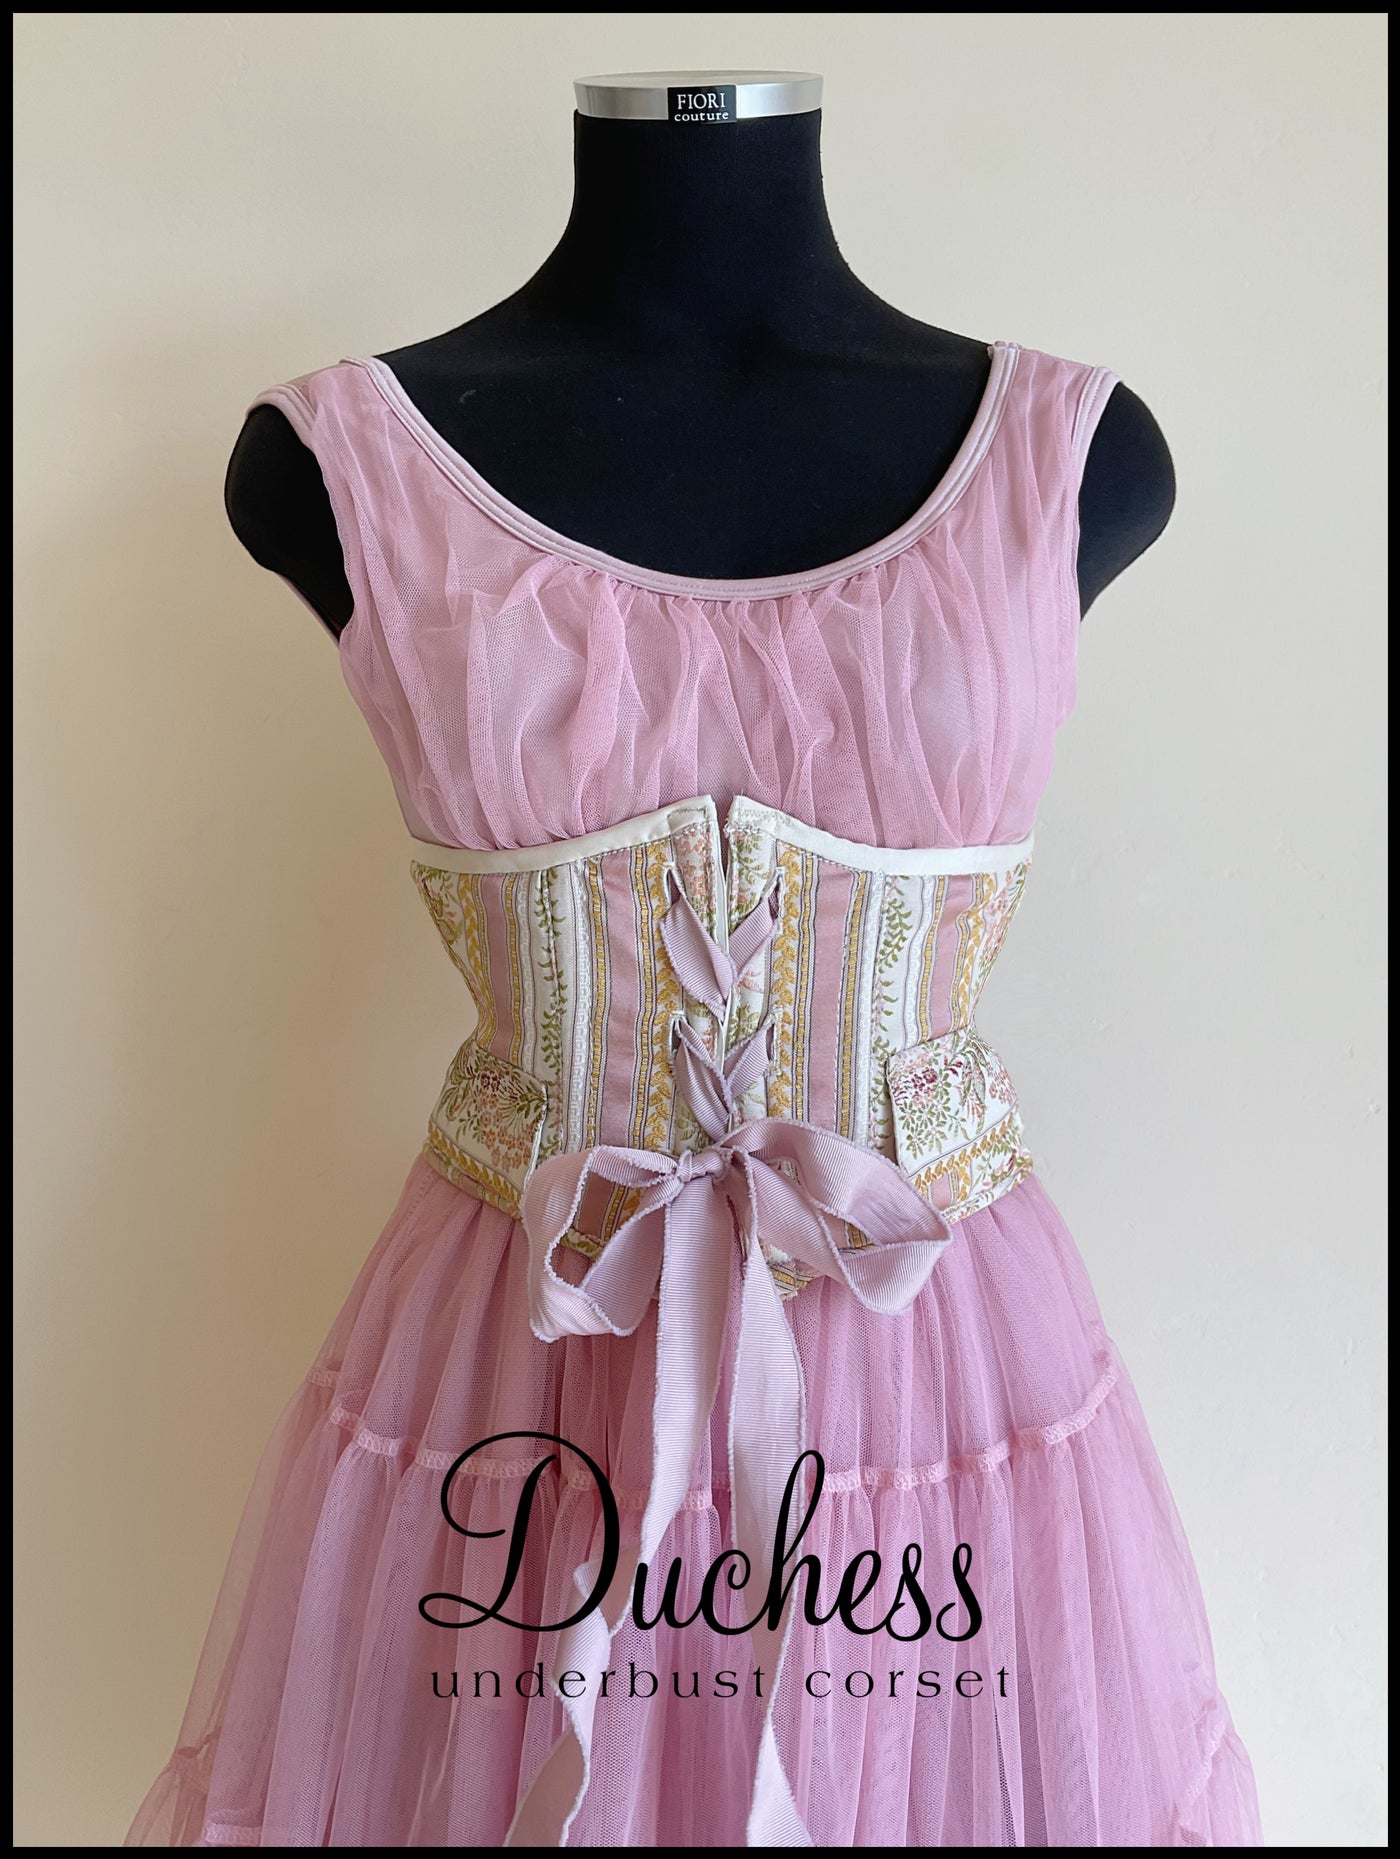 Duchess underbust corset